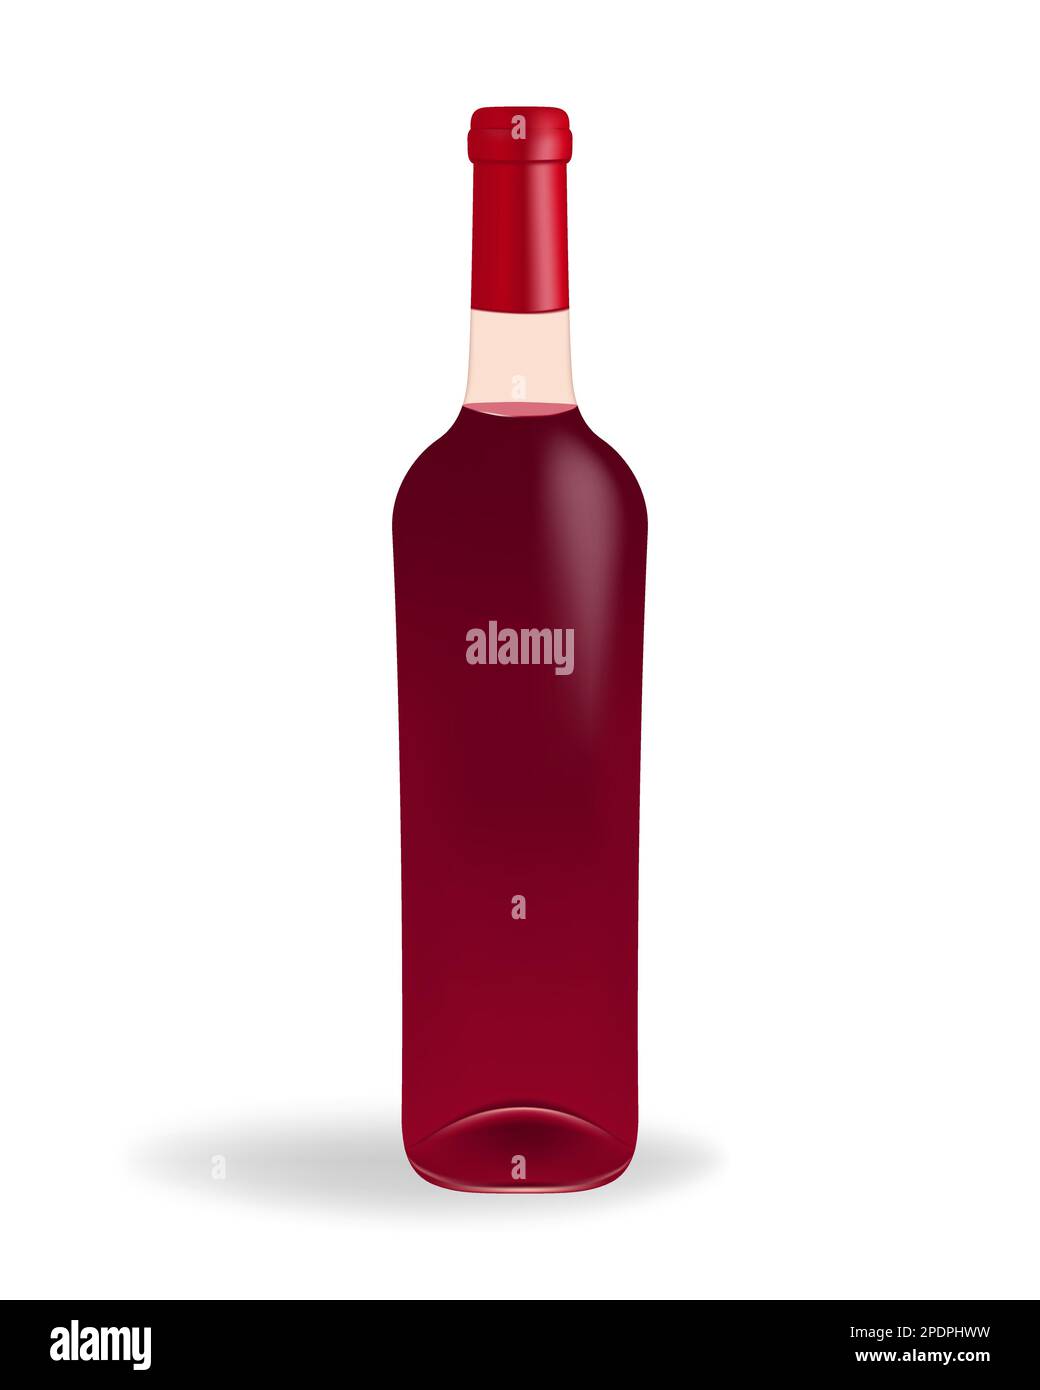 Bouteille de verre remplie de vin rouge sur un fond blanc propre. Parfait pour les vins, les menus, ou tout projet lié au vin, aux boissons, aux célébrations, a Illustration de Vecteur